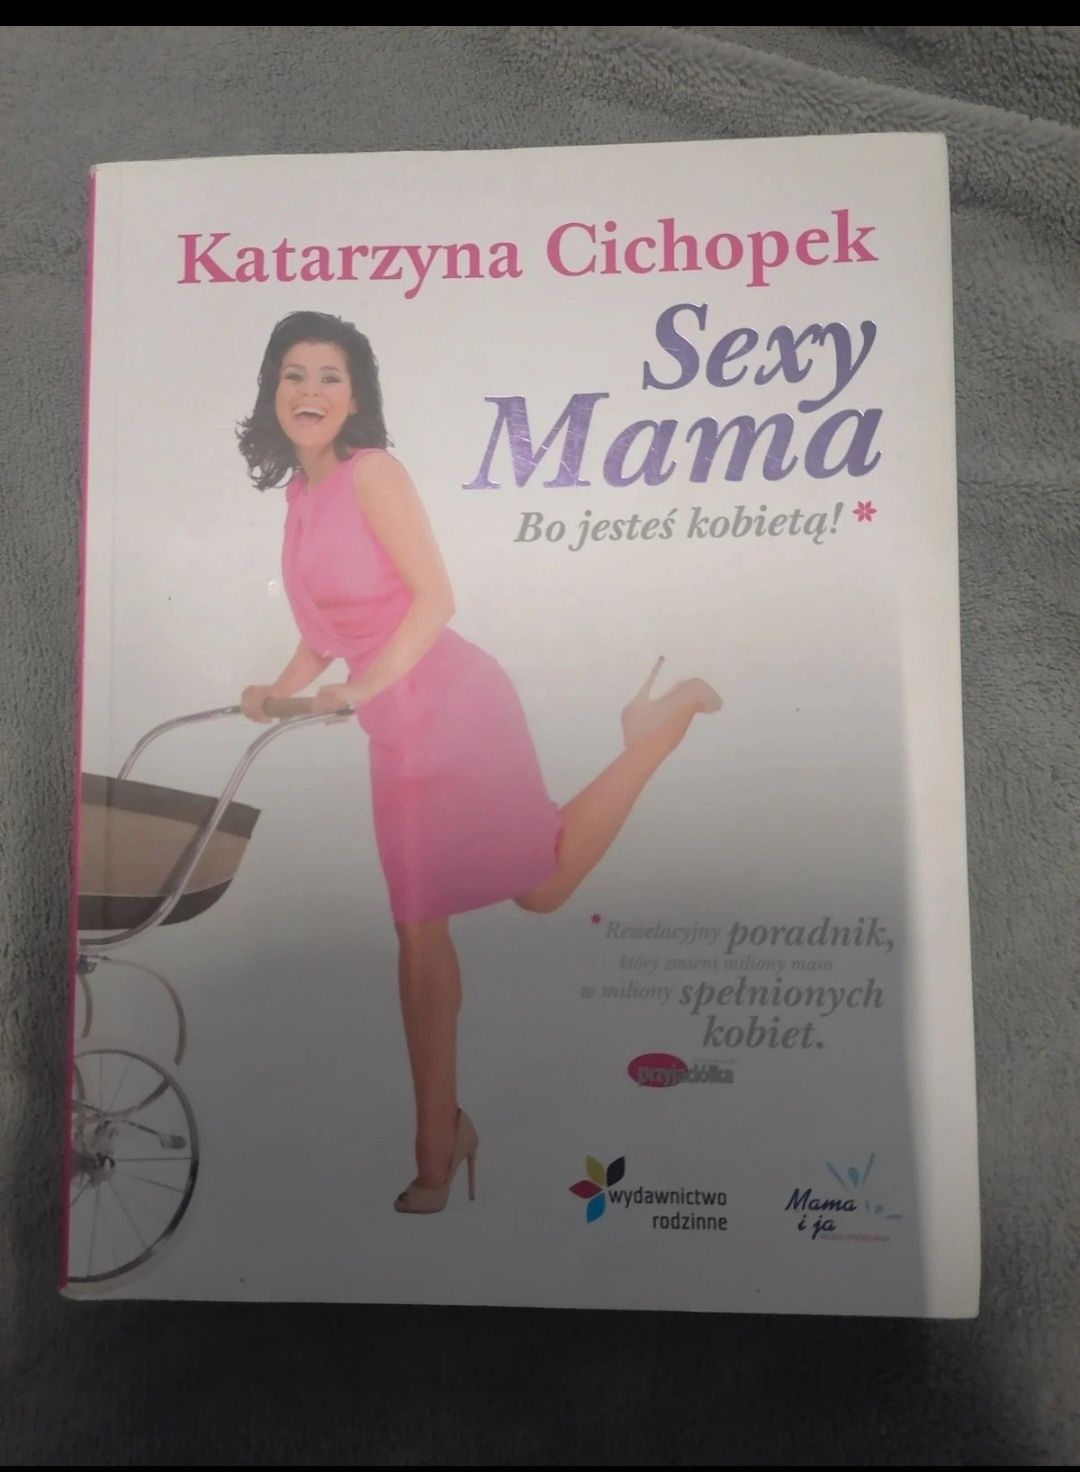 Katarzyna Cichopek, sexy mama